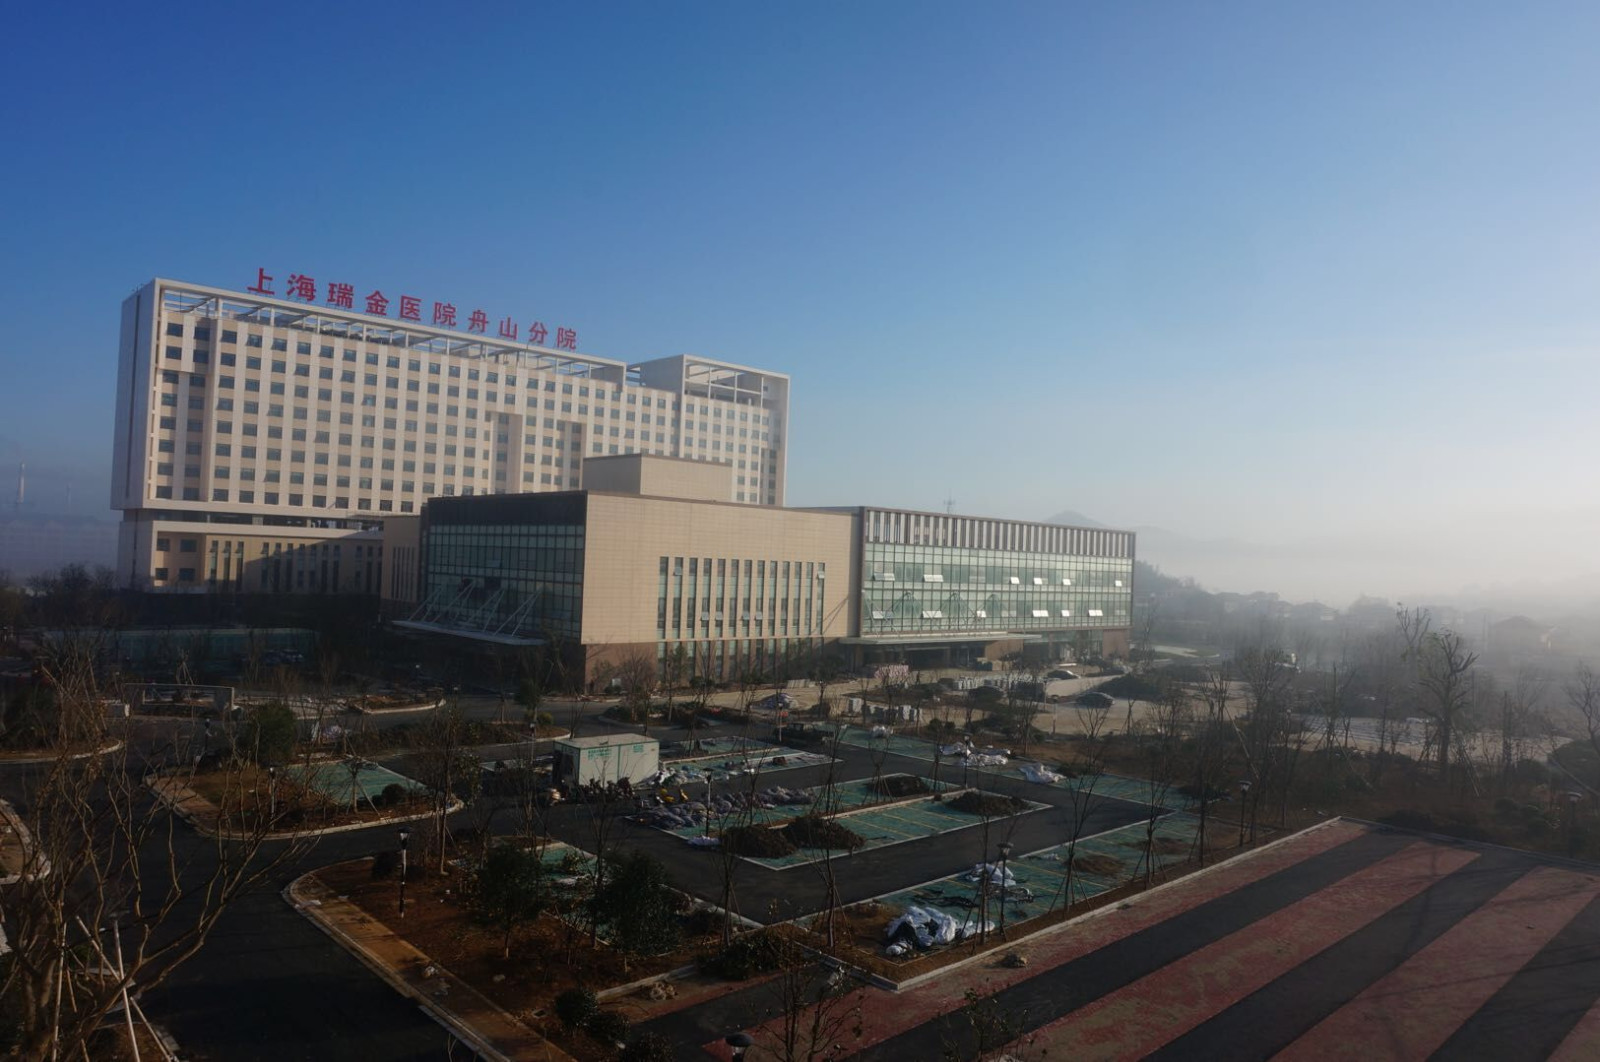 鹏瑞利集团与上海壹博医院共建天津第一家以功能神经外科为特色的专科医院-医院汇-丁香园